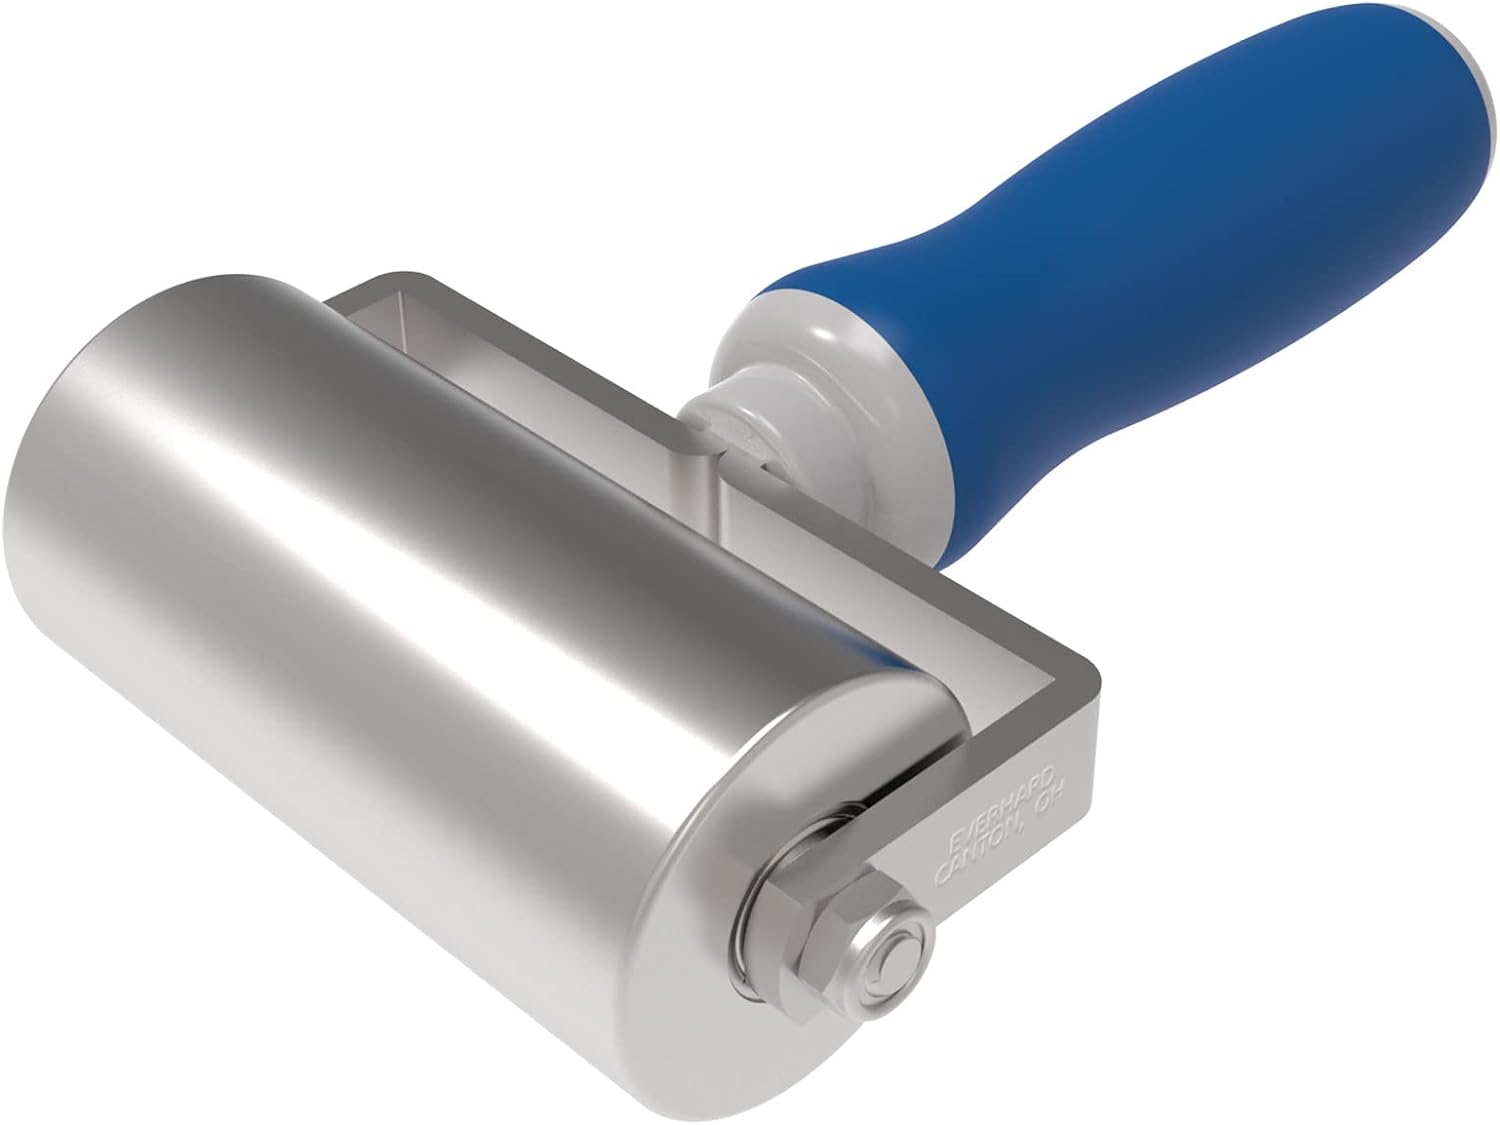 Everhard Convertible Seam Roller | 2" X 4" Steel Roller | Ergonomic Handle